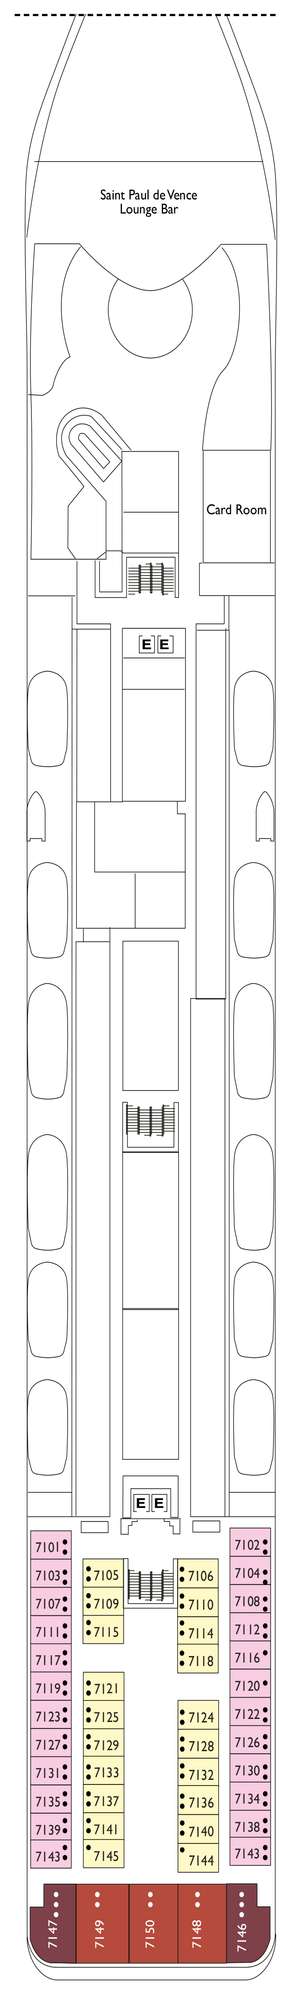 Deck plan for Costa neoRiviera